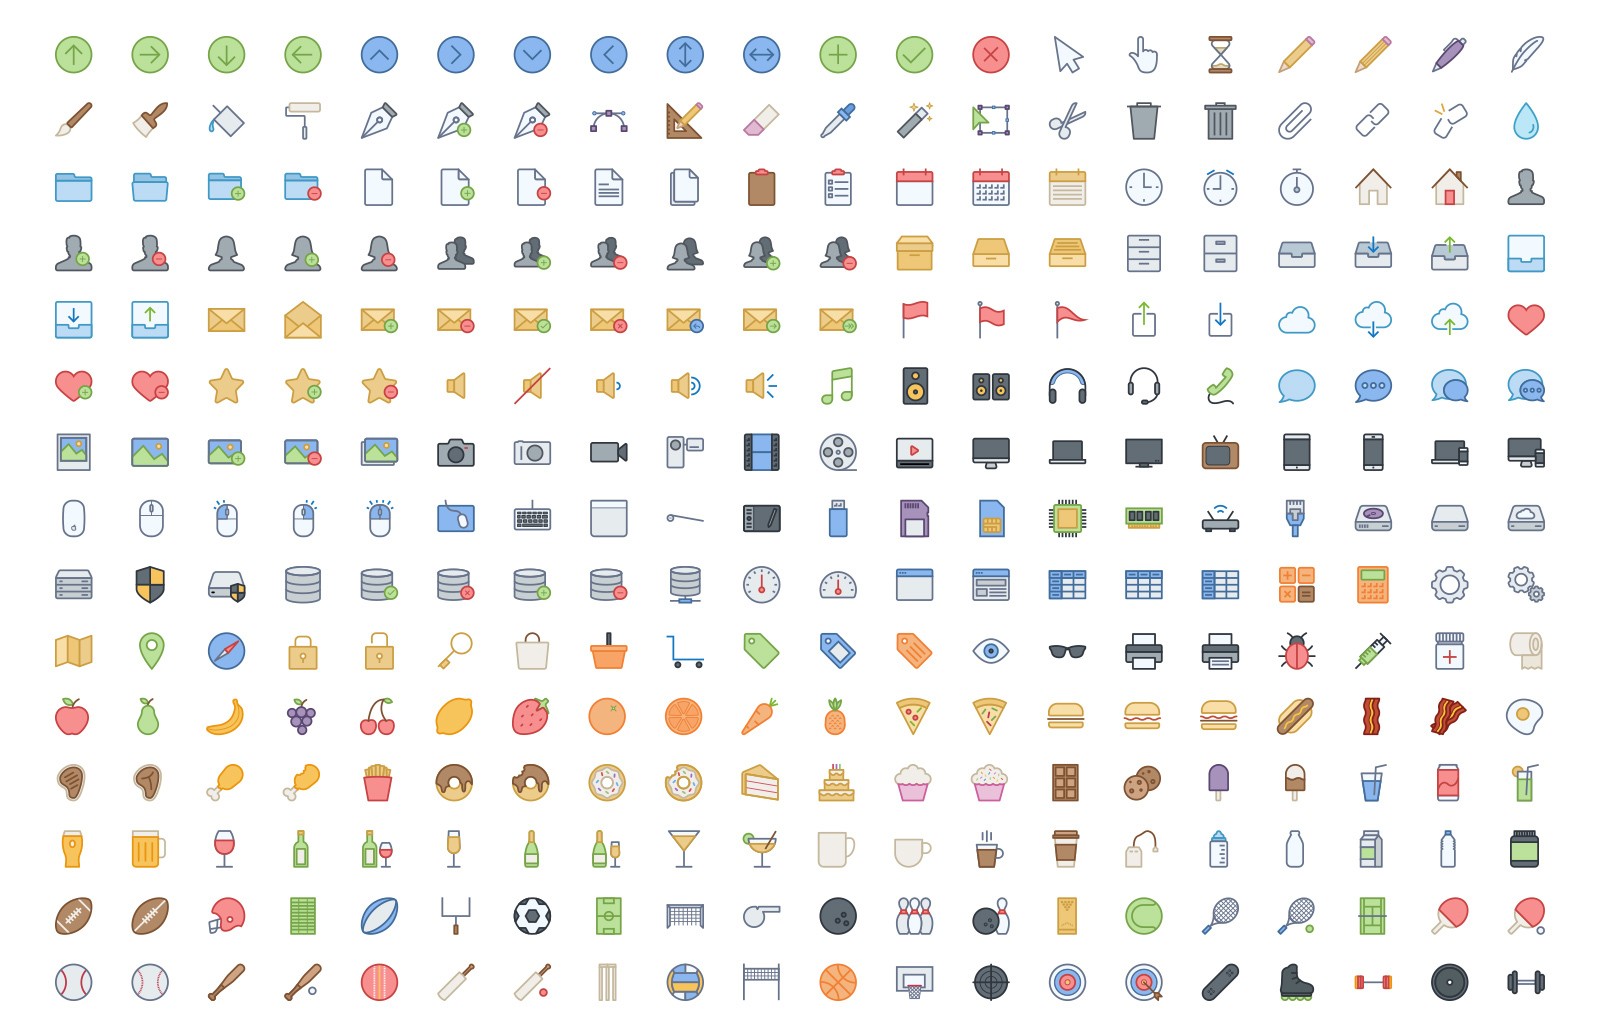 540枚多彩图标集 Vector Line Icons – Color插图(2)